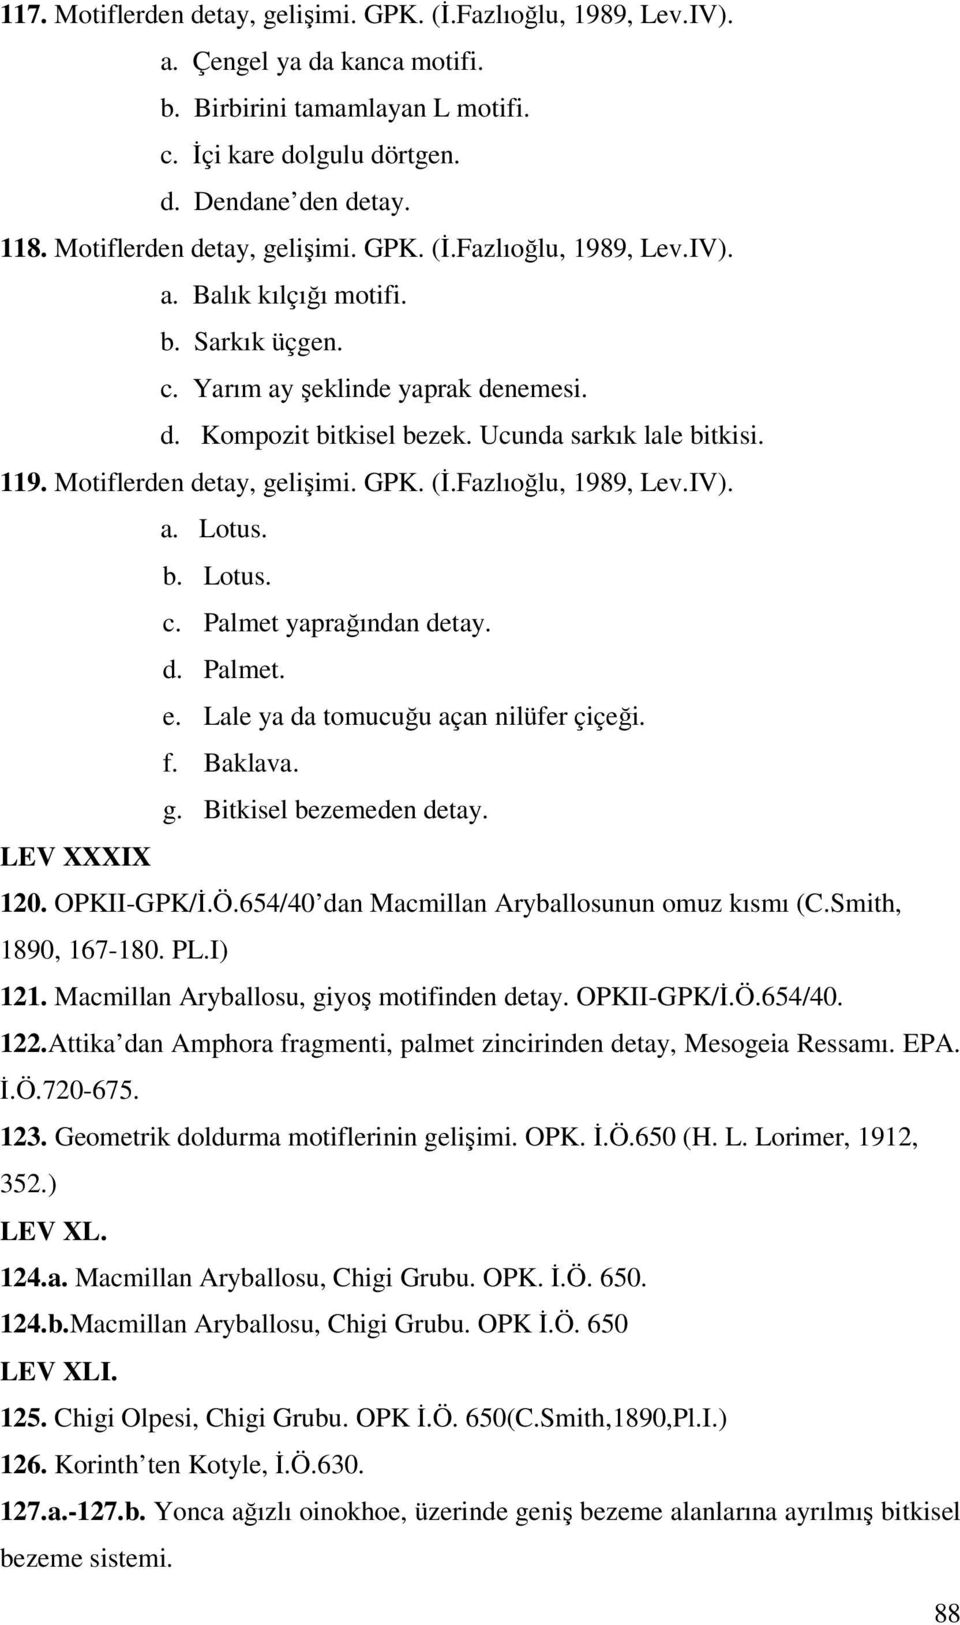 119. Motiflerden detay, gelişimi. GPK. (İ.Fazlıoğlu, 1989, Lev.IV). a. Lotus. b. Lotus. c. Palmet yaprağından detay. d. Palmet. e. Lale ya da tomucuğu açan nilüfer çiçeği. f. Baklava. g. Bitkisel bezemeden detay.